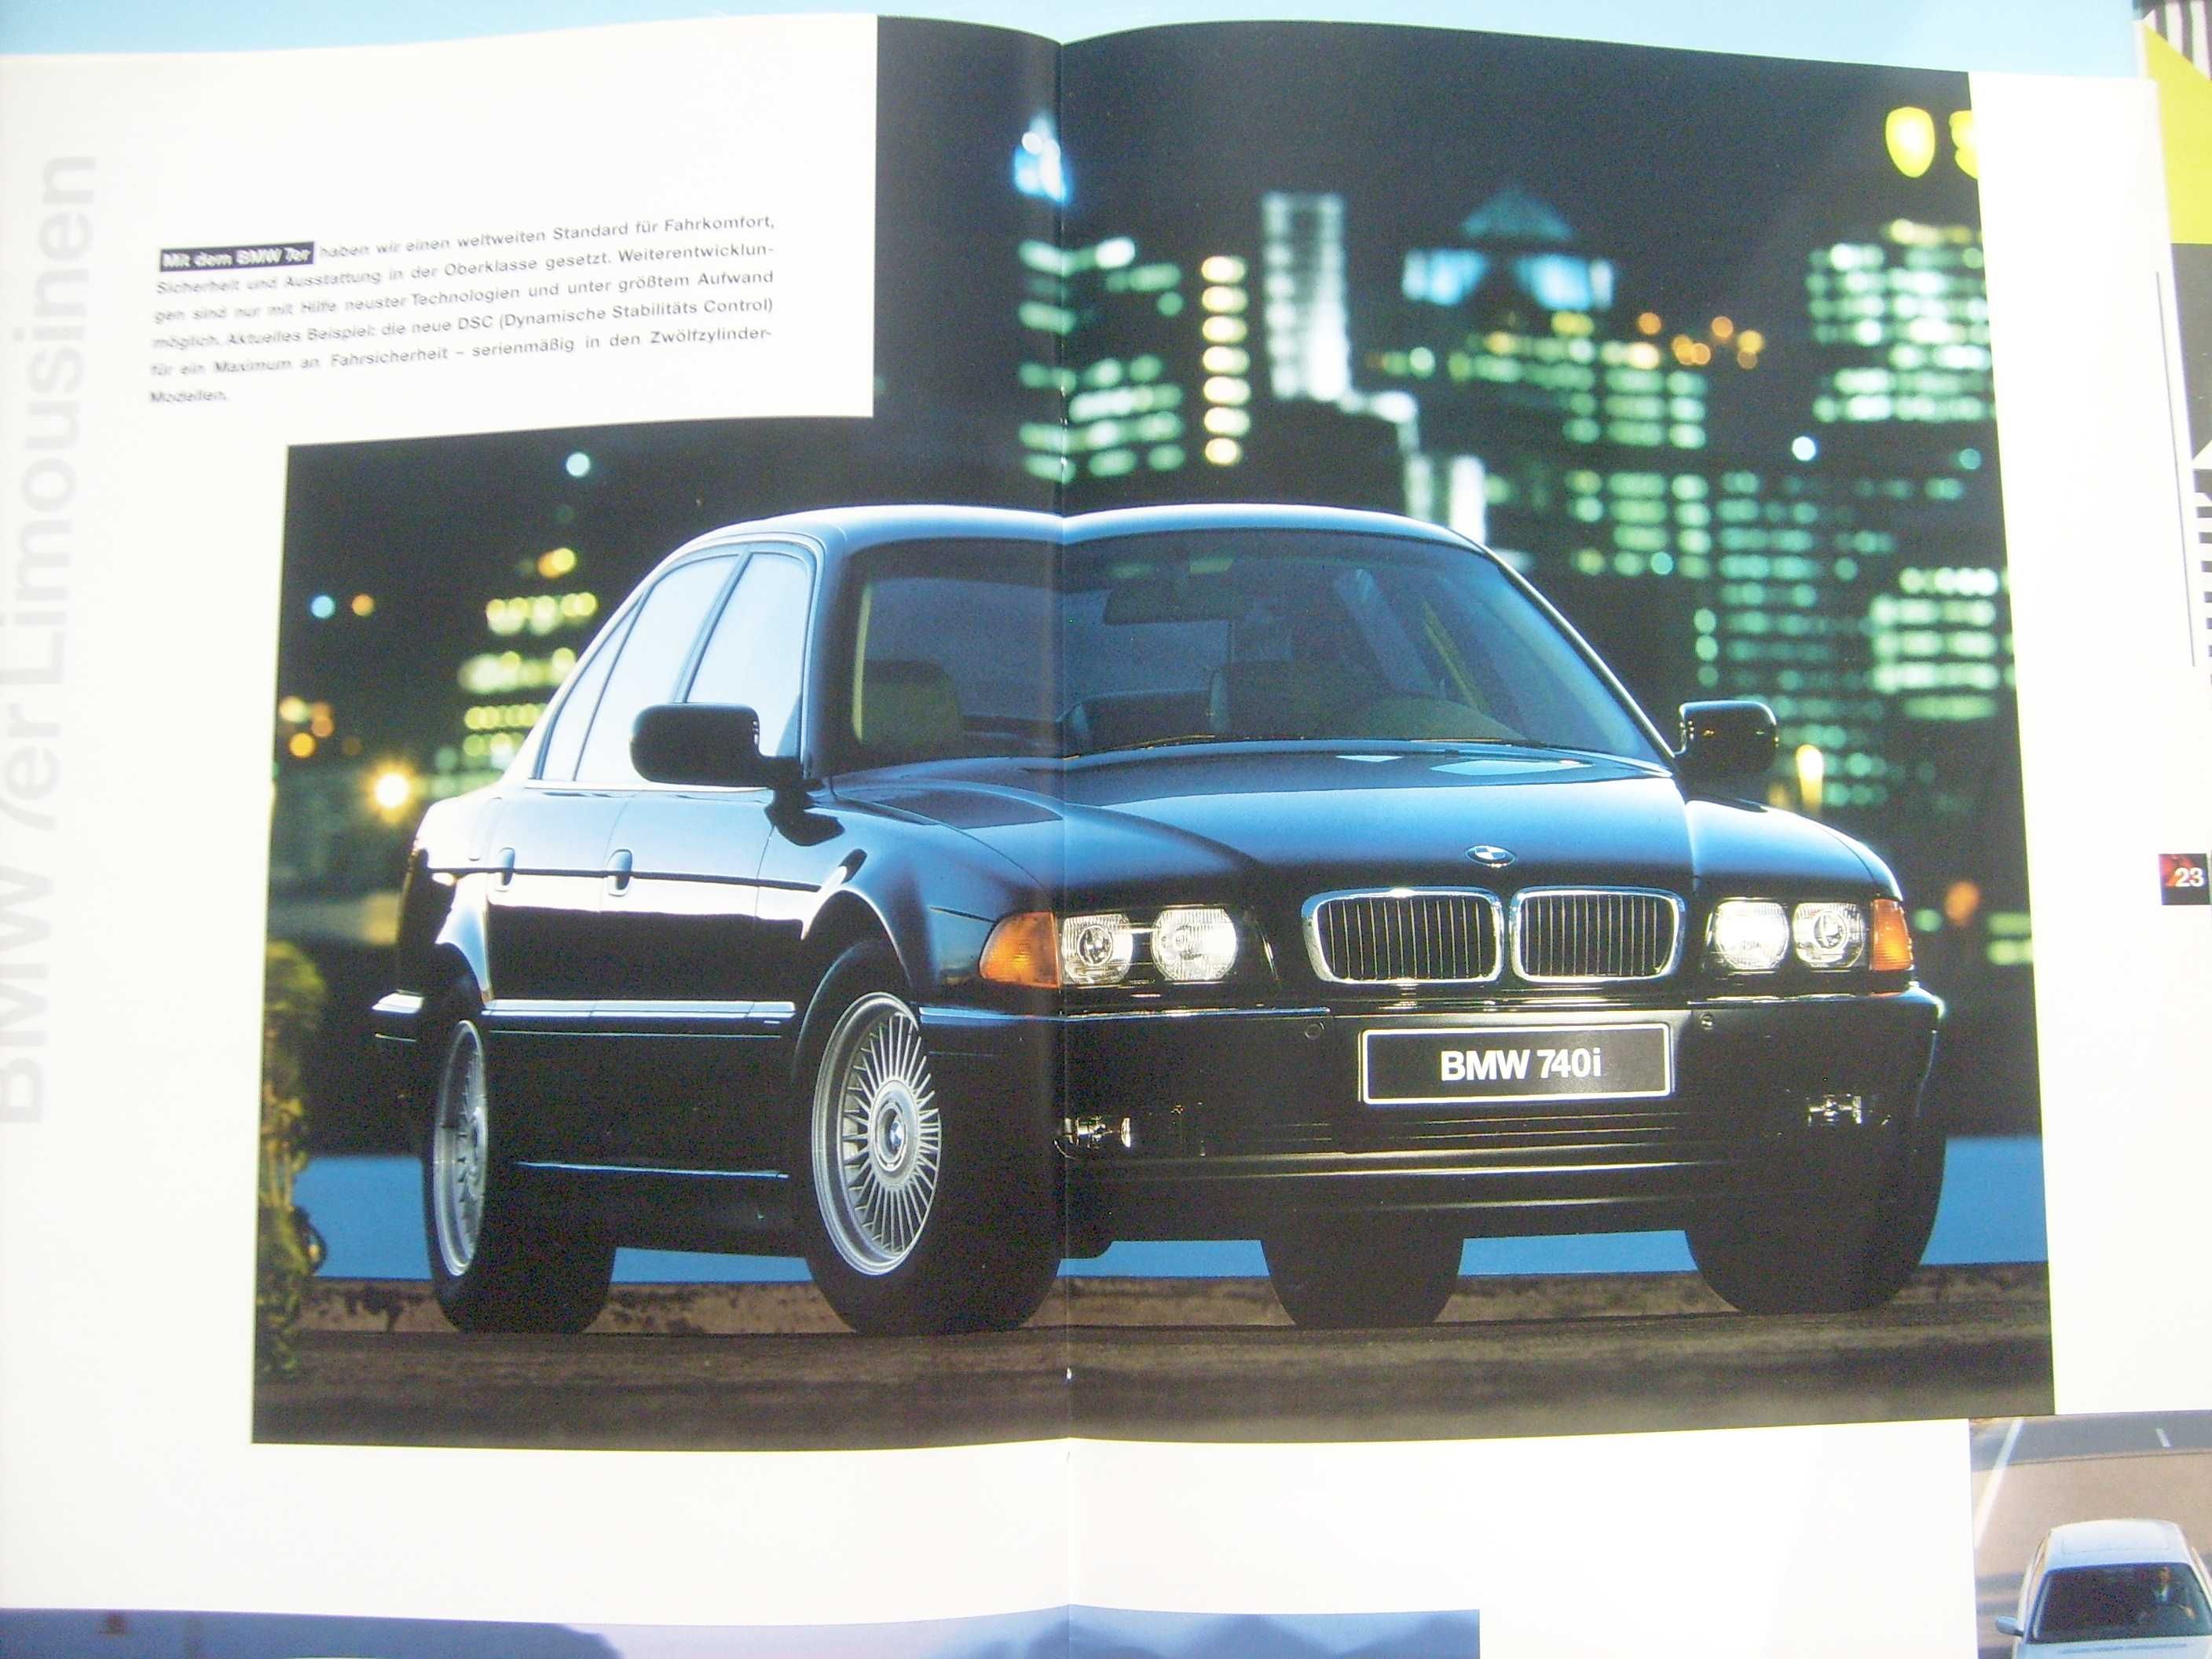 BMW 1997 prospekt 36 str./ 3 E36 + M3, Z3 (E36/7), 5 E39, 7 E38, 8 E31